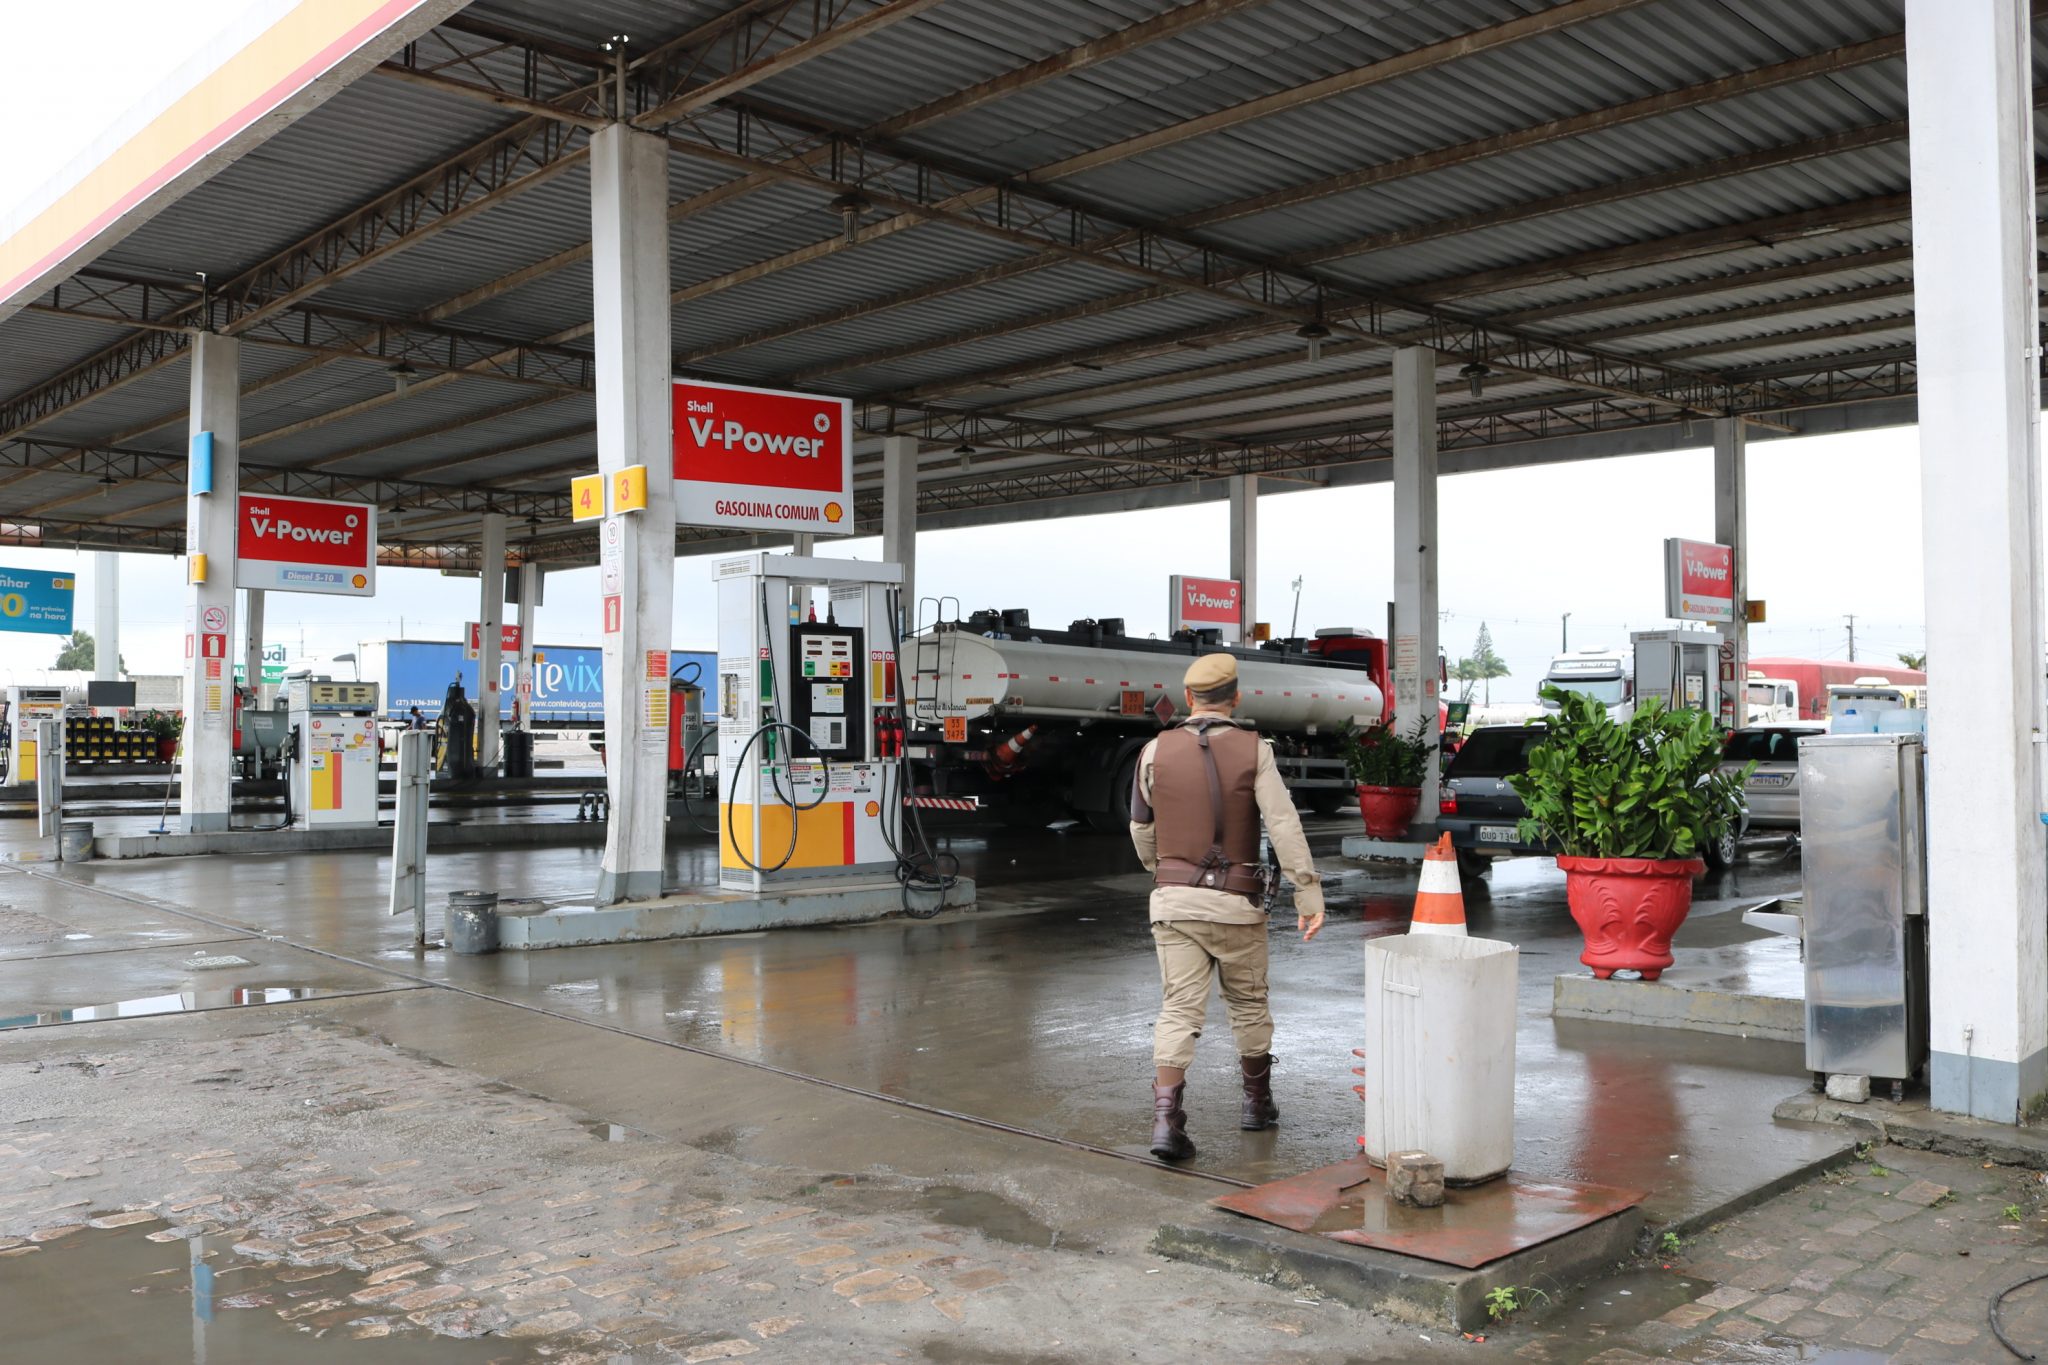 Posto é flagrado armazenando gasolina com a 79% de álcool na Bahia